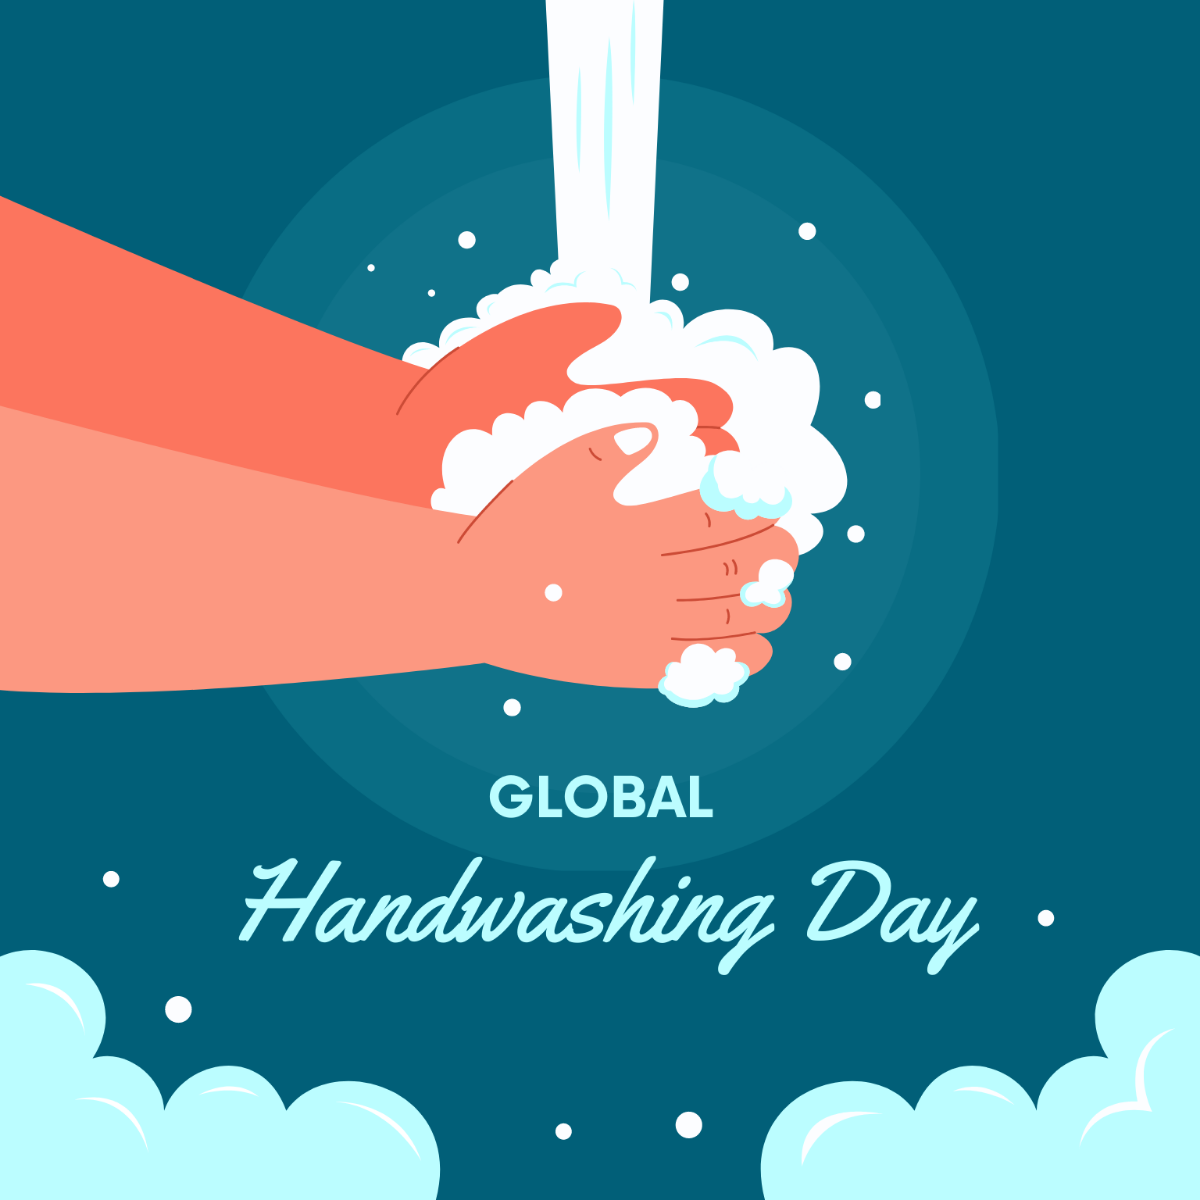 Free Global Handwashing Day Illustration Template